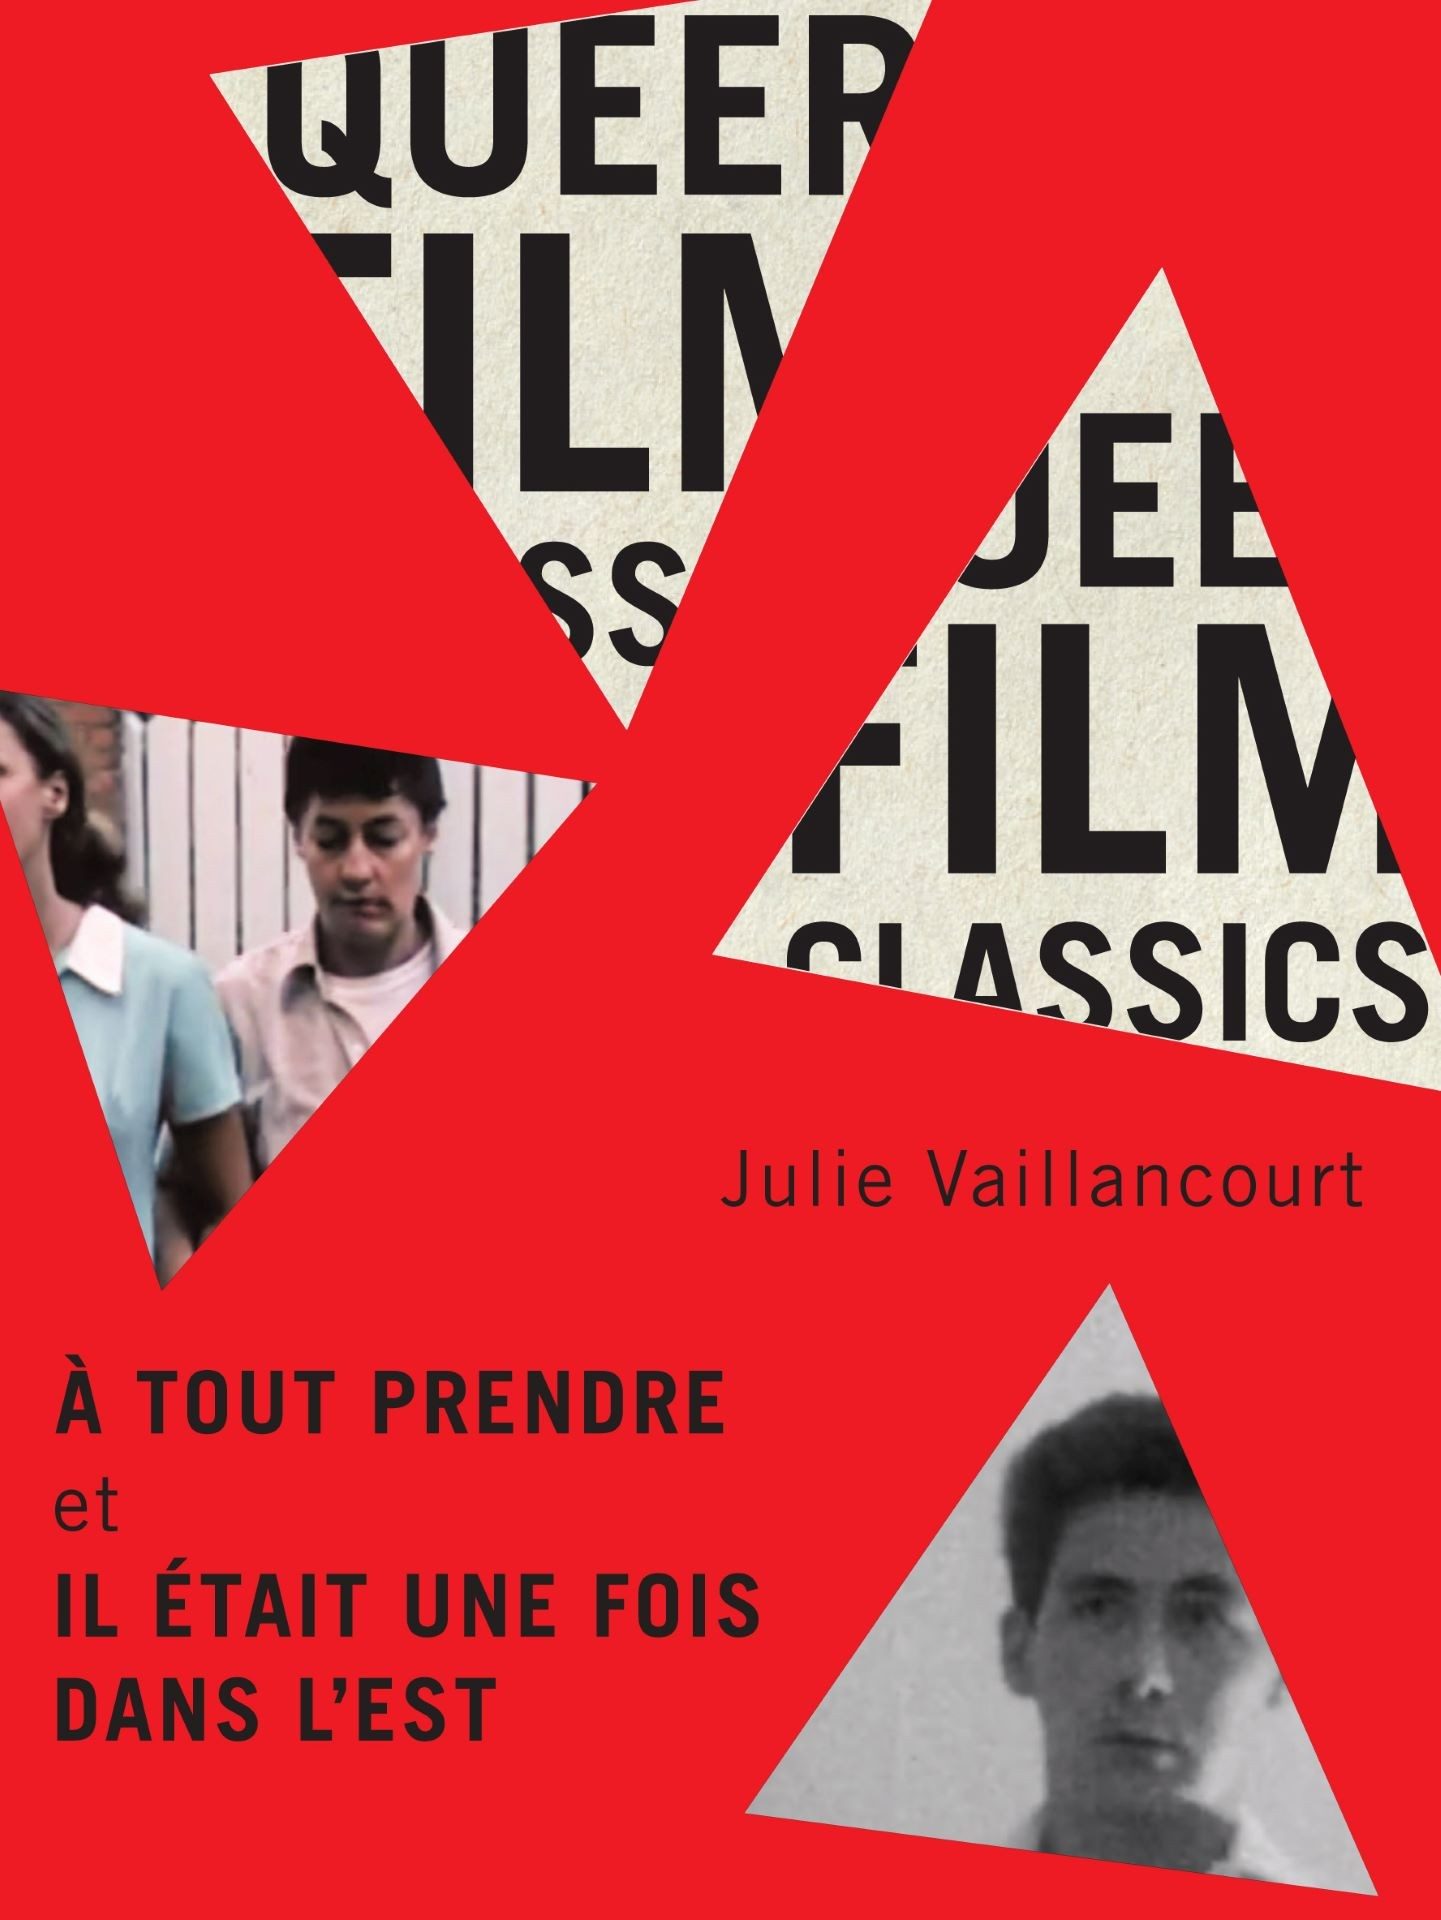 Book cover with red X symbols over black and white images of film scenes and portraits, promoting 'À tout prendre et Il était une fois dans l'est' by Julie Vaillancourt.